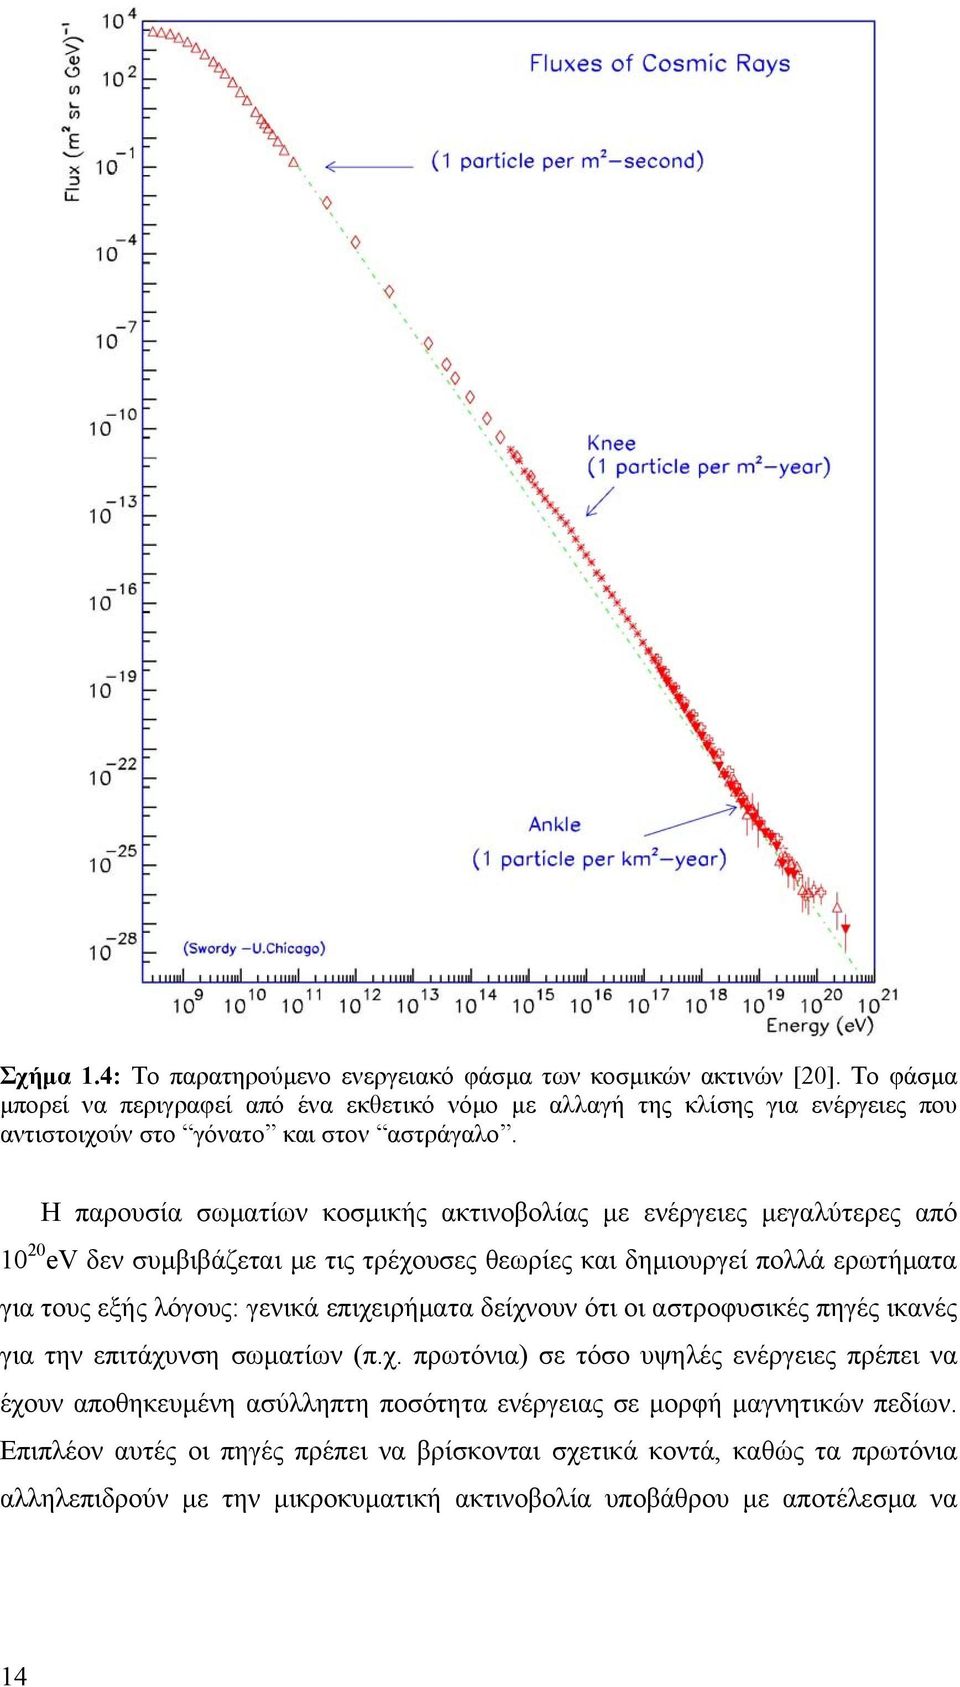 Η παρουσία σωματίων κοσμικής ακτινοβολίας με ενέργειες μεγαλύτερες από 10 0 ev δεν συμβιβάζεται με τις τρέχουσες θεωρίες και δημιουργεί πολλά ερωτήματα για τους εξής λόγους: γενικά